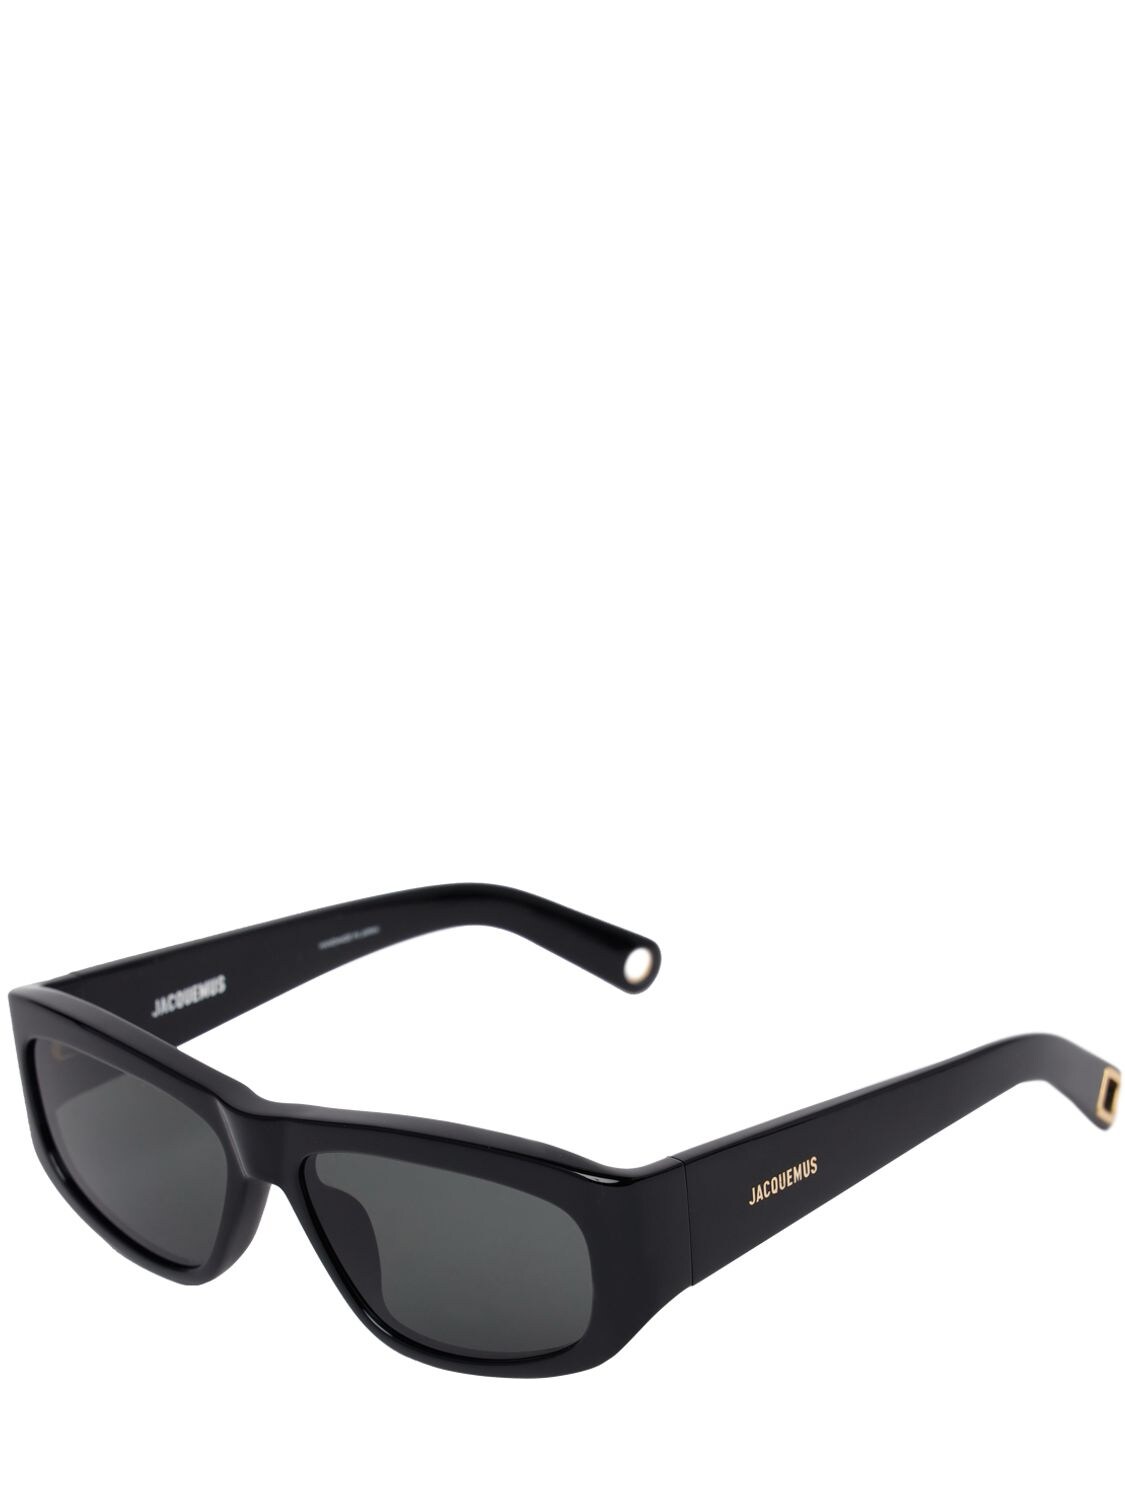 Shop Jacquemus Les Lunettes Pilota Sunglasses In Schwarz